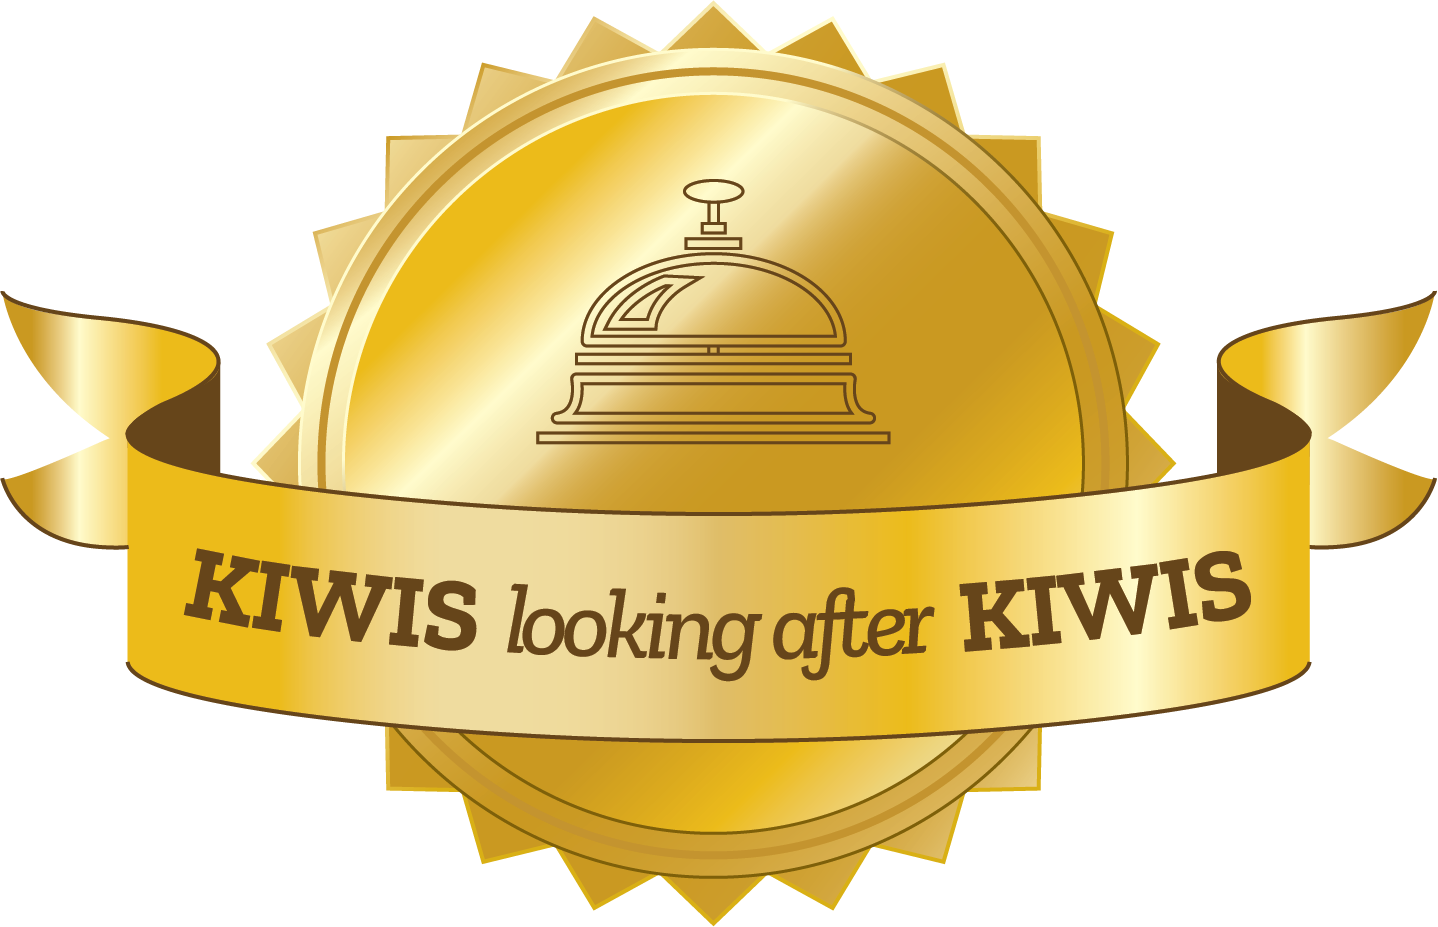 Kiwis looking after kiwis